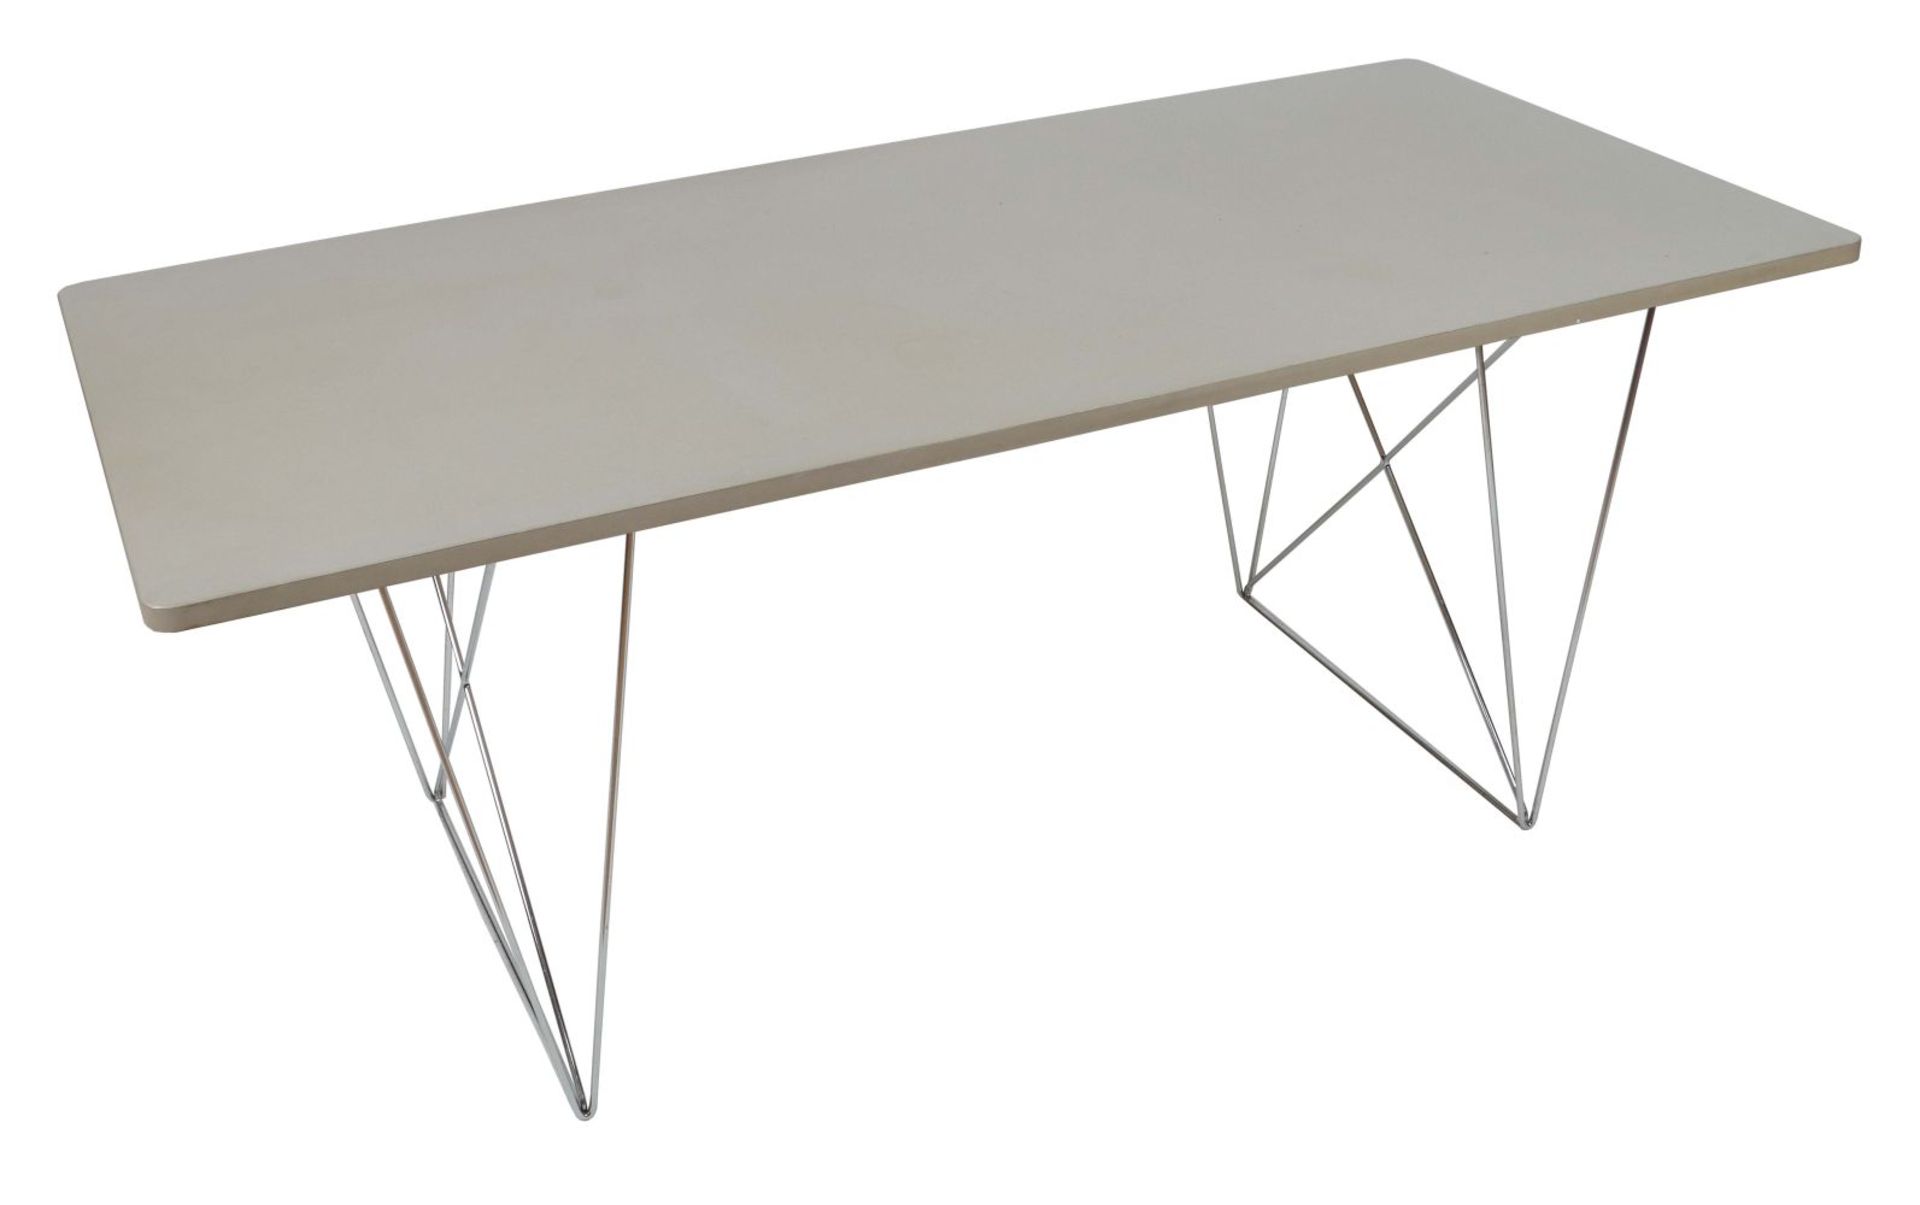 Tisch mit verchromten Stahldrahtbeinen - Bild 2 aus 2